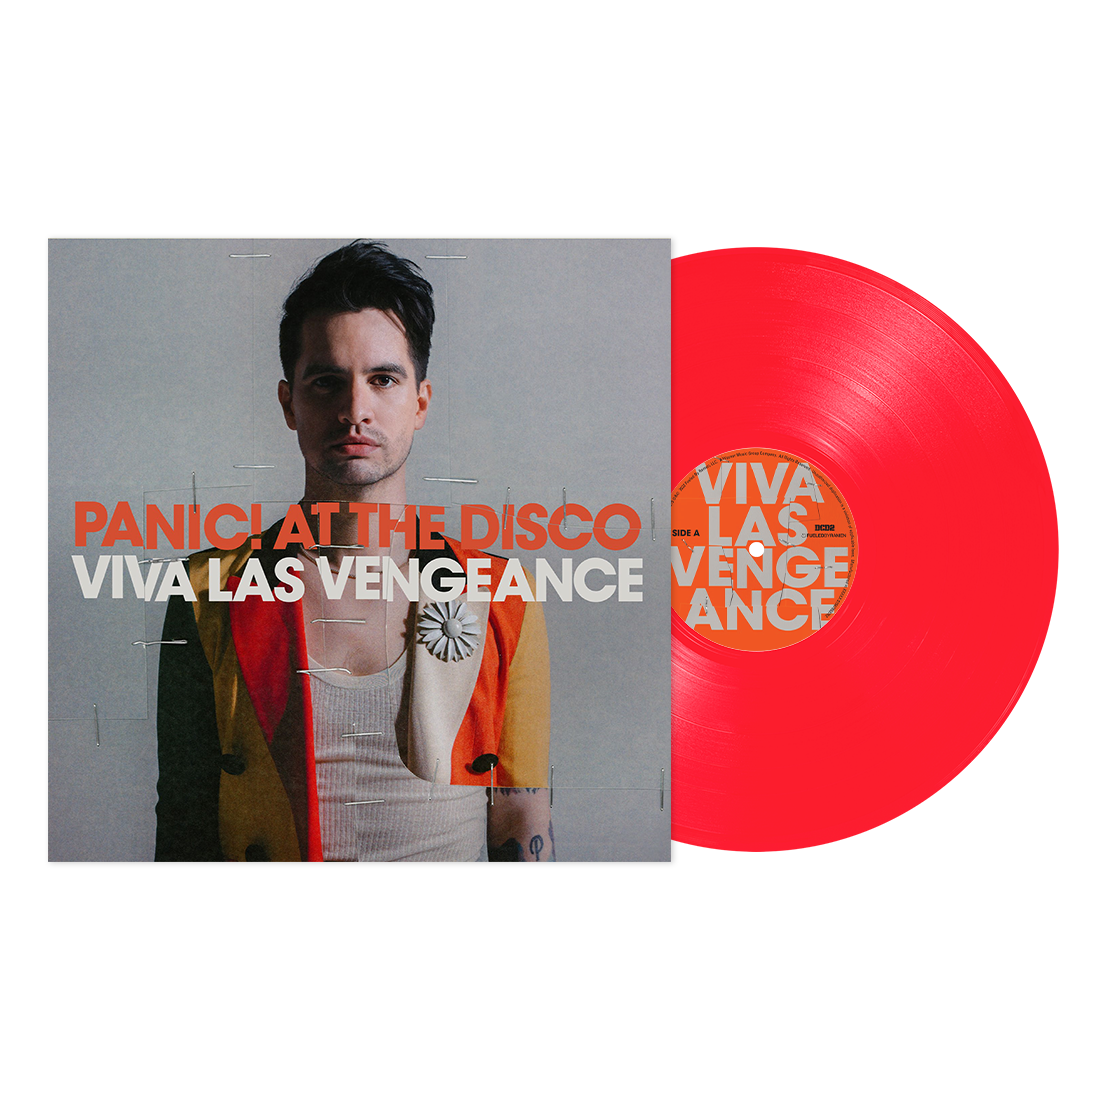 Album artwork for Album artwork for Viva Las Vengeance by Panic! At the Disco by Viva Las Vengeance - Panic! At the Disco